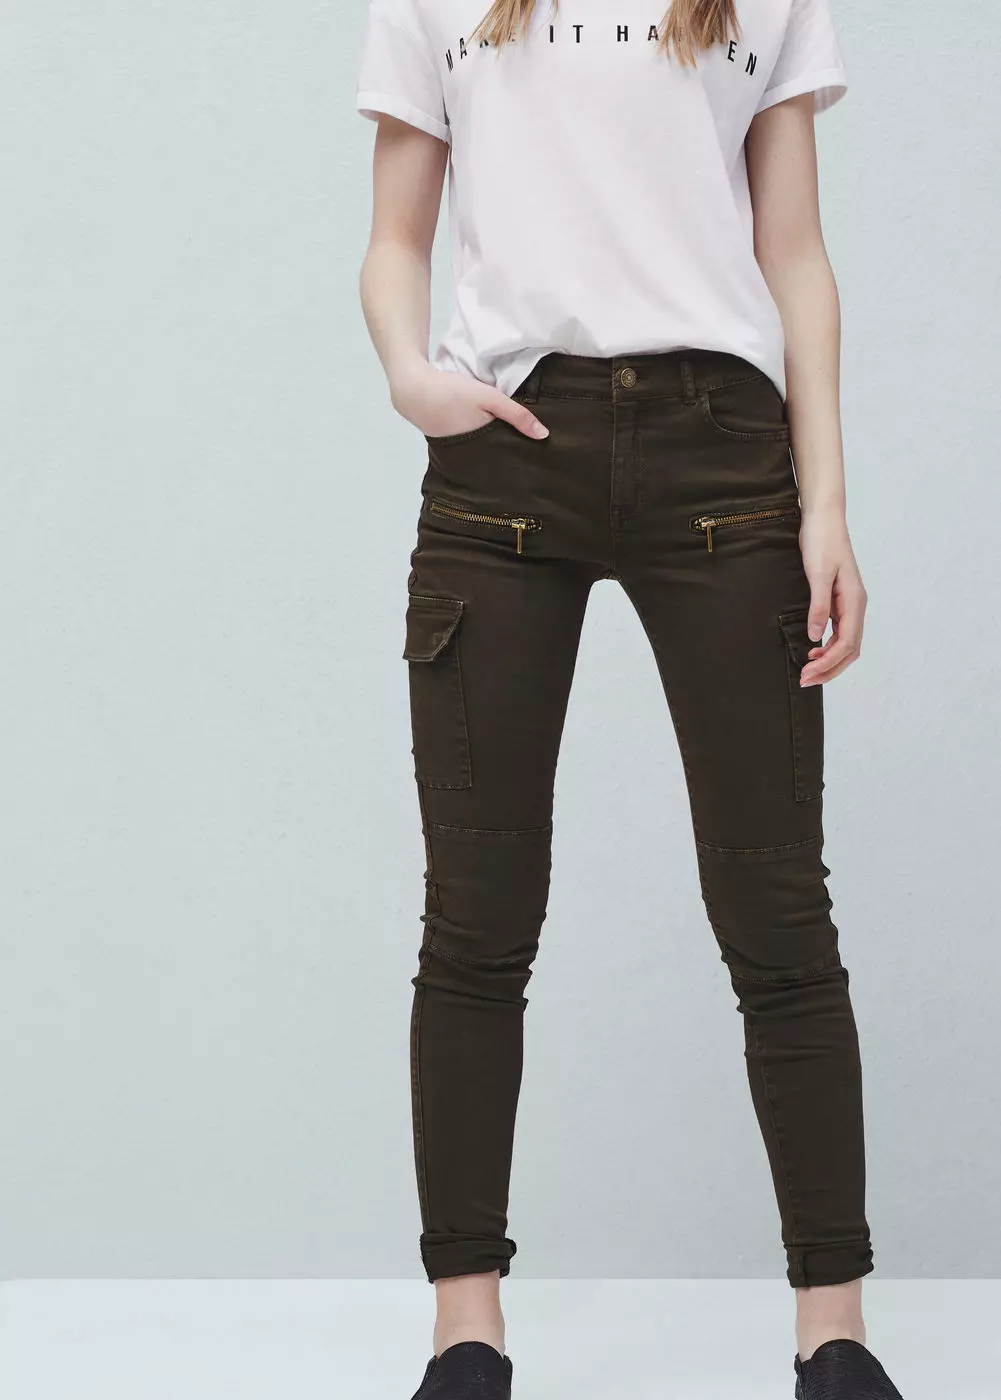 Spodnie mody 2021: Stylowe modele damskie, trendy mody 917_242